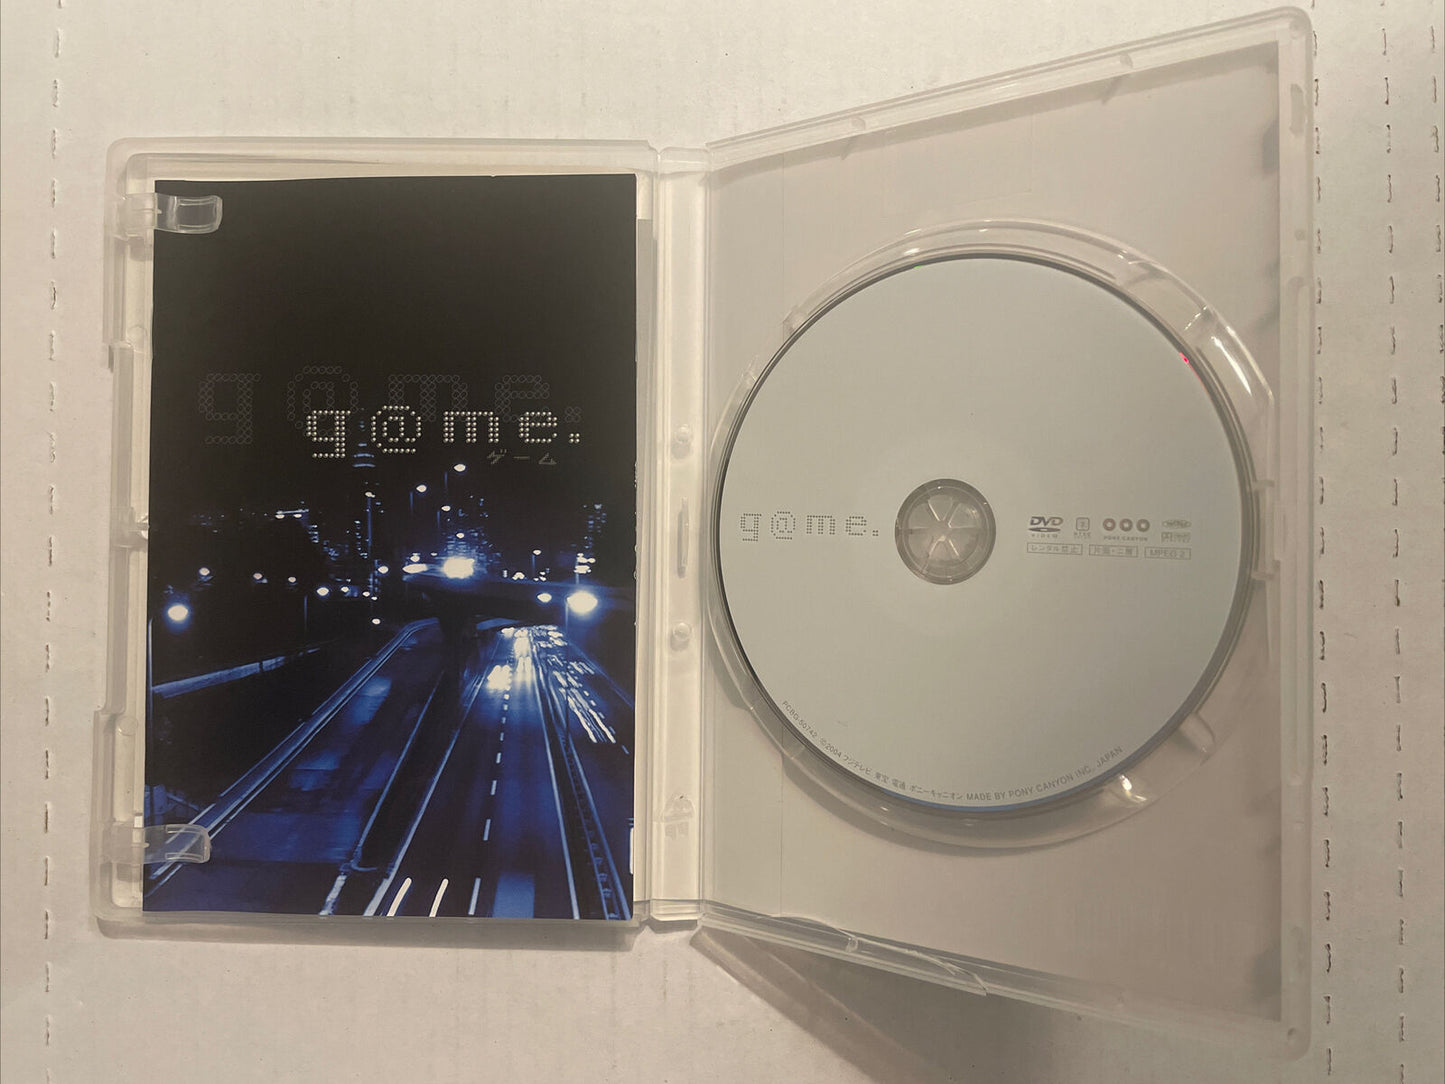 G@me (Game) DVD R2